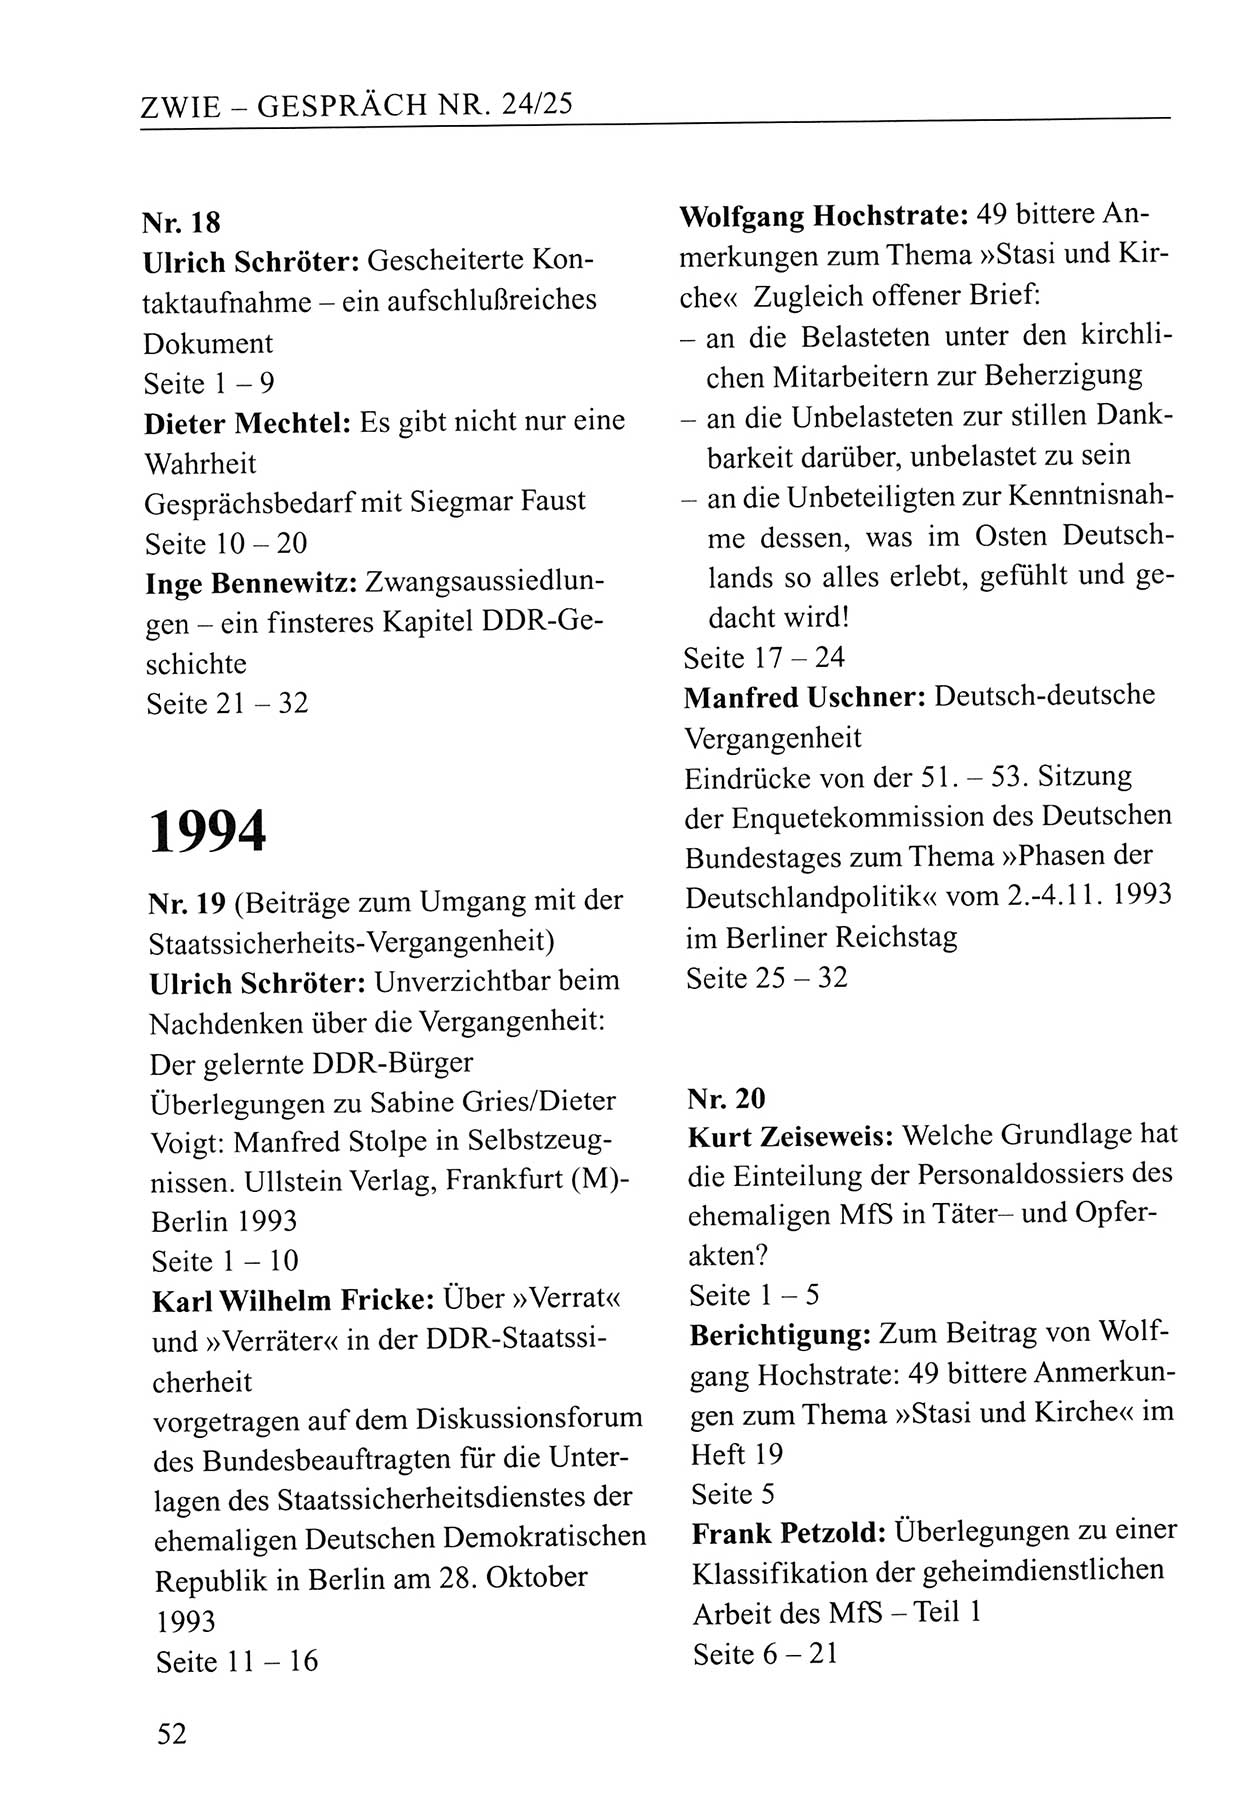 Zwie-Gespräch, Beiträge zum Umgang mit der Staatssicherheits-Vergangenheit [Deutsche Demokratische Republik (DDR)], Ausgabe Nr. 24/25, Berlin 1994, Seite 52 (Zwie-Gespr. Ausg. 24/25 1994, S. 52)